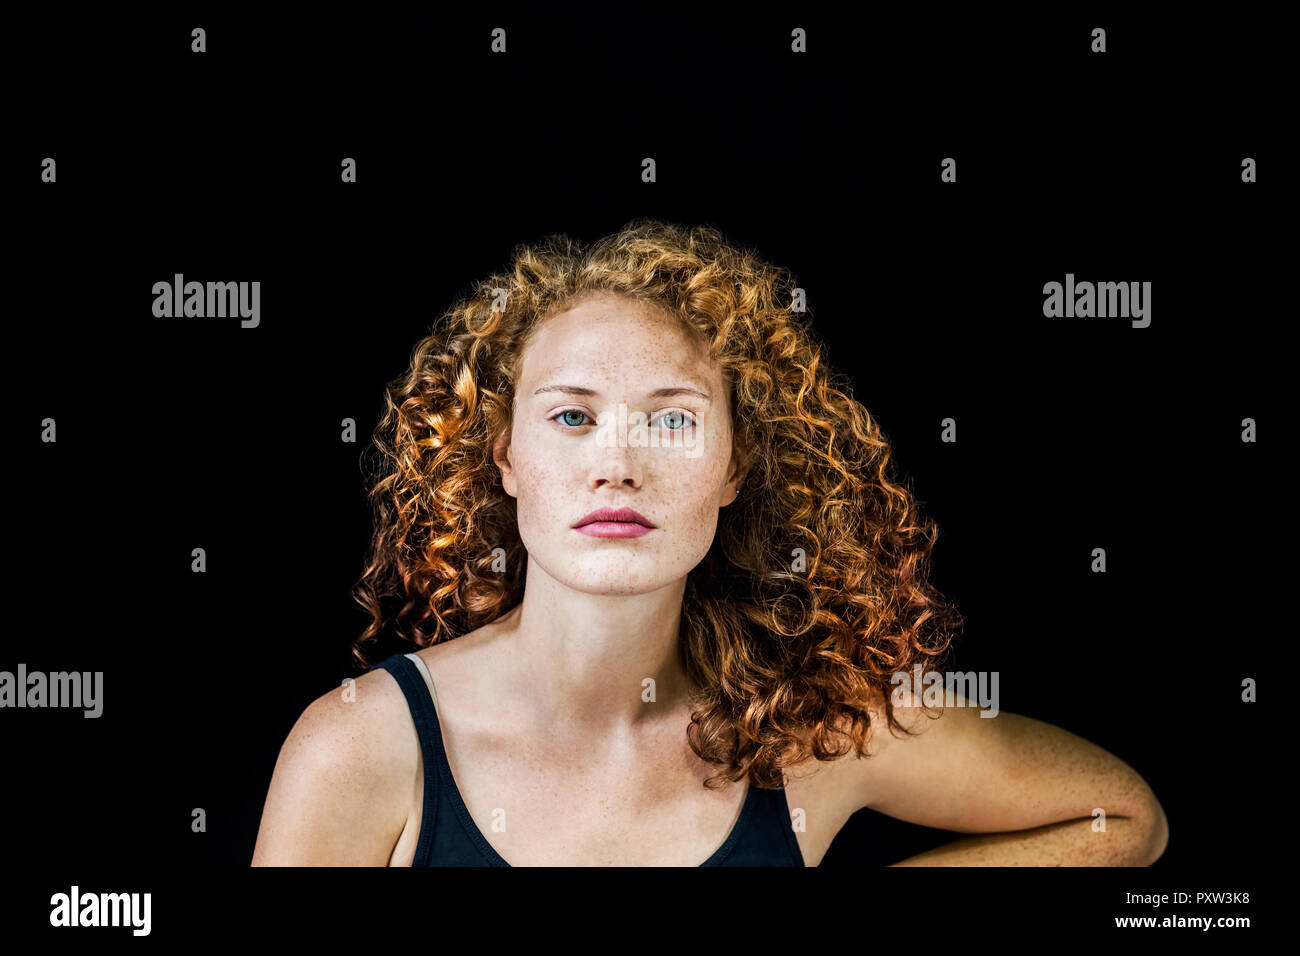 Ritratto di freckled giovane donna con ricci capelli rossi davanti a sfondo nero Foto Stock